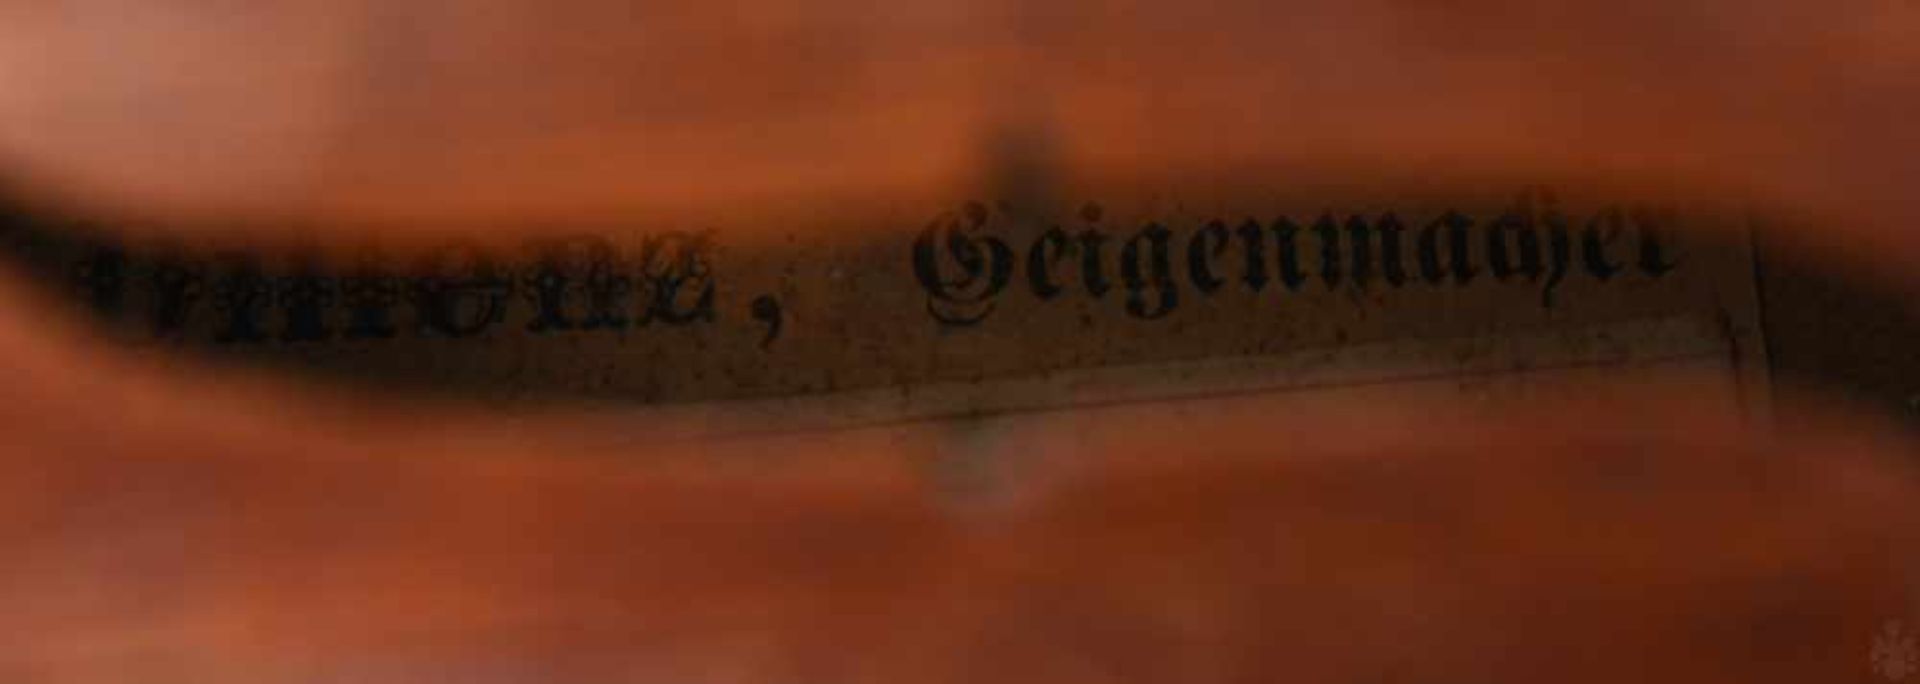 GEIGE 1, Holz/Rosshaar, Deutschland 1. Hälfte 20. Jahrhundert Geige im Kasten mit Bogen. Beschädigt. - Bild 5 aus 8